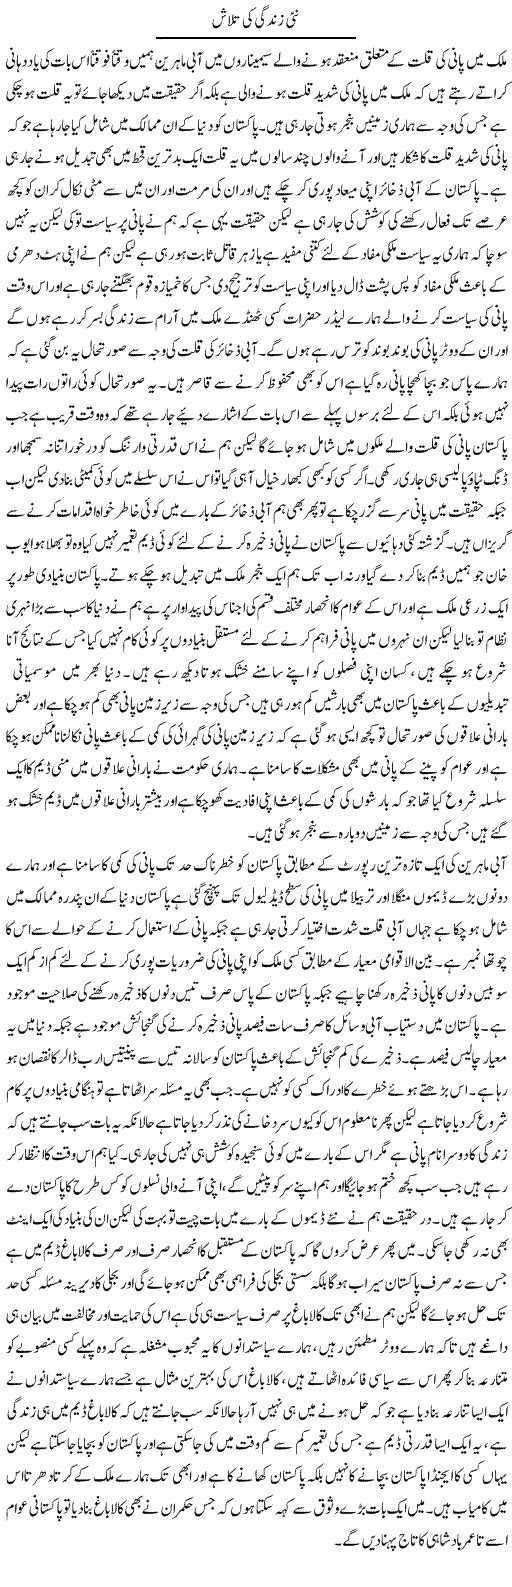 Nai Zindagi Ki Talash | Abdul Qadir Hassan | Daily Urdu Columns